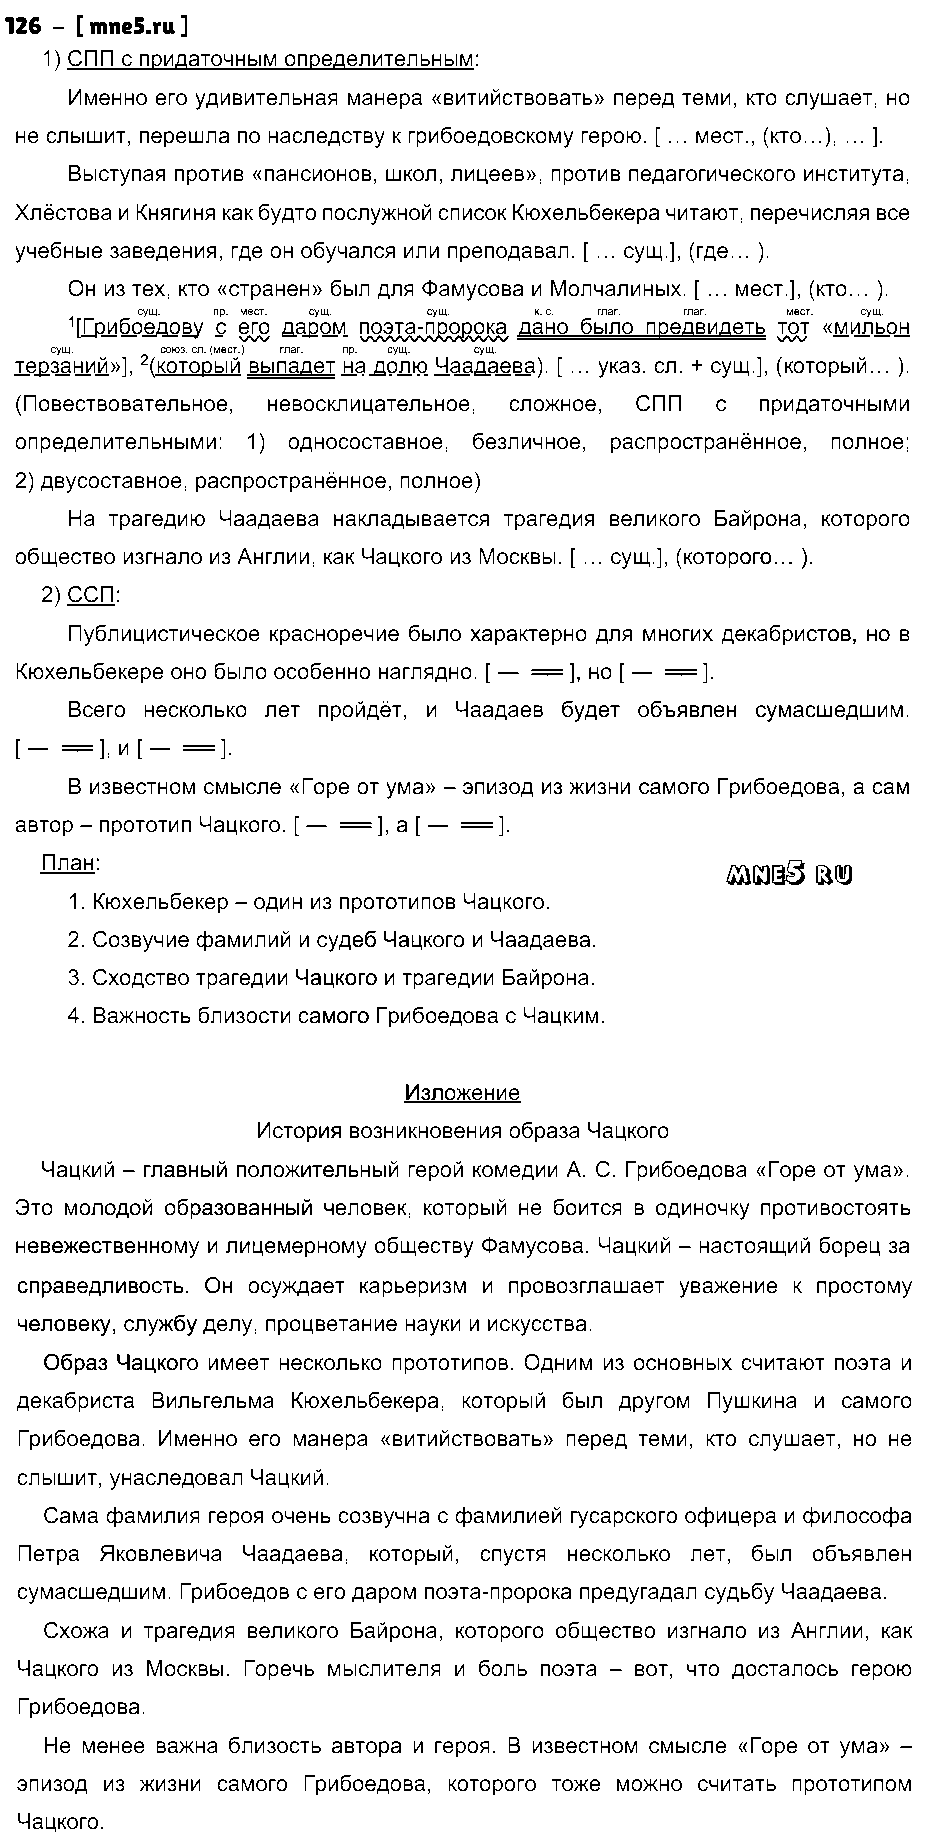 ГДЗ Русский язык 9 класс - 102